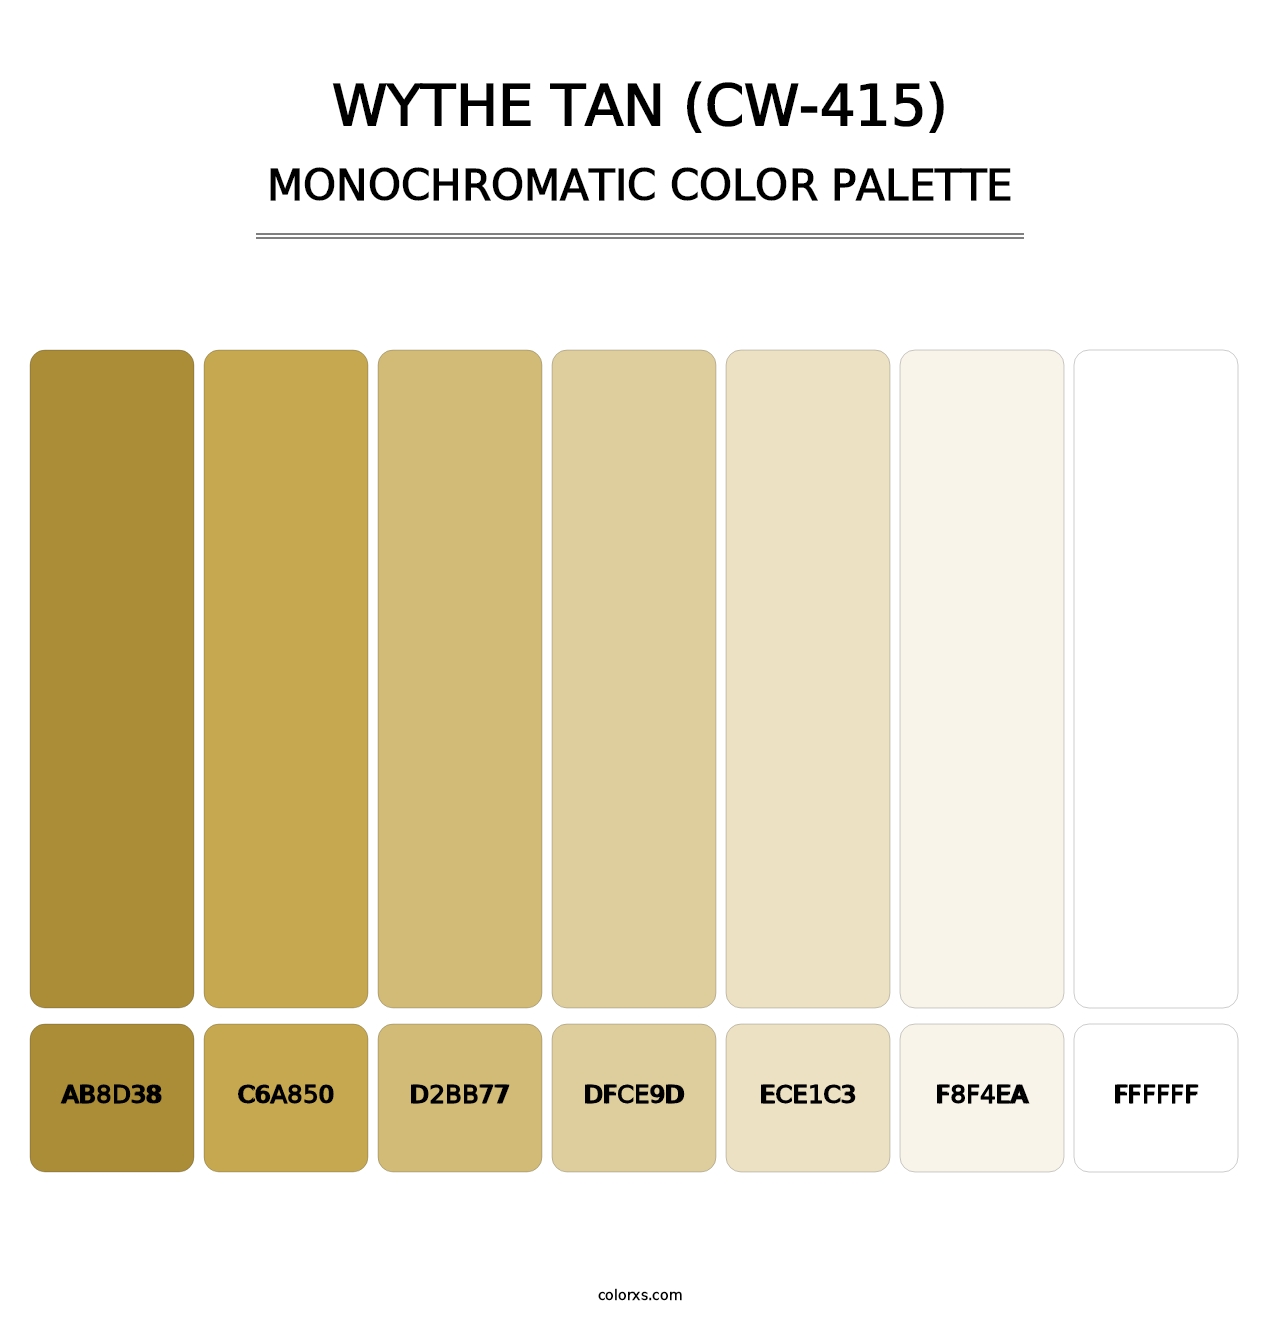 Wythe Tan (CW-415) - Monochromatic Color Palette